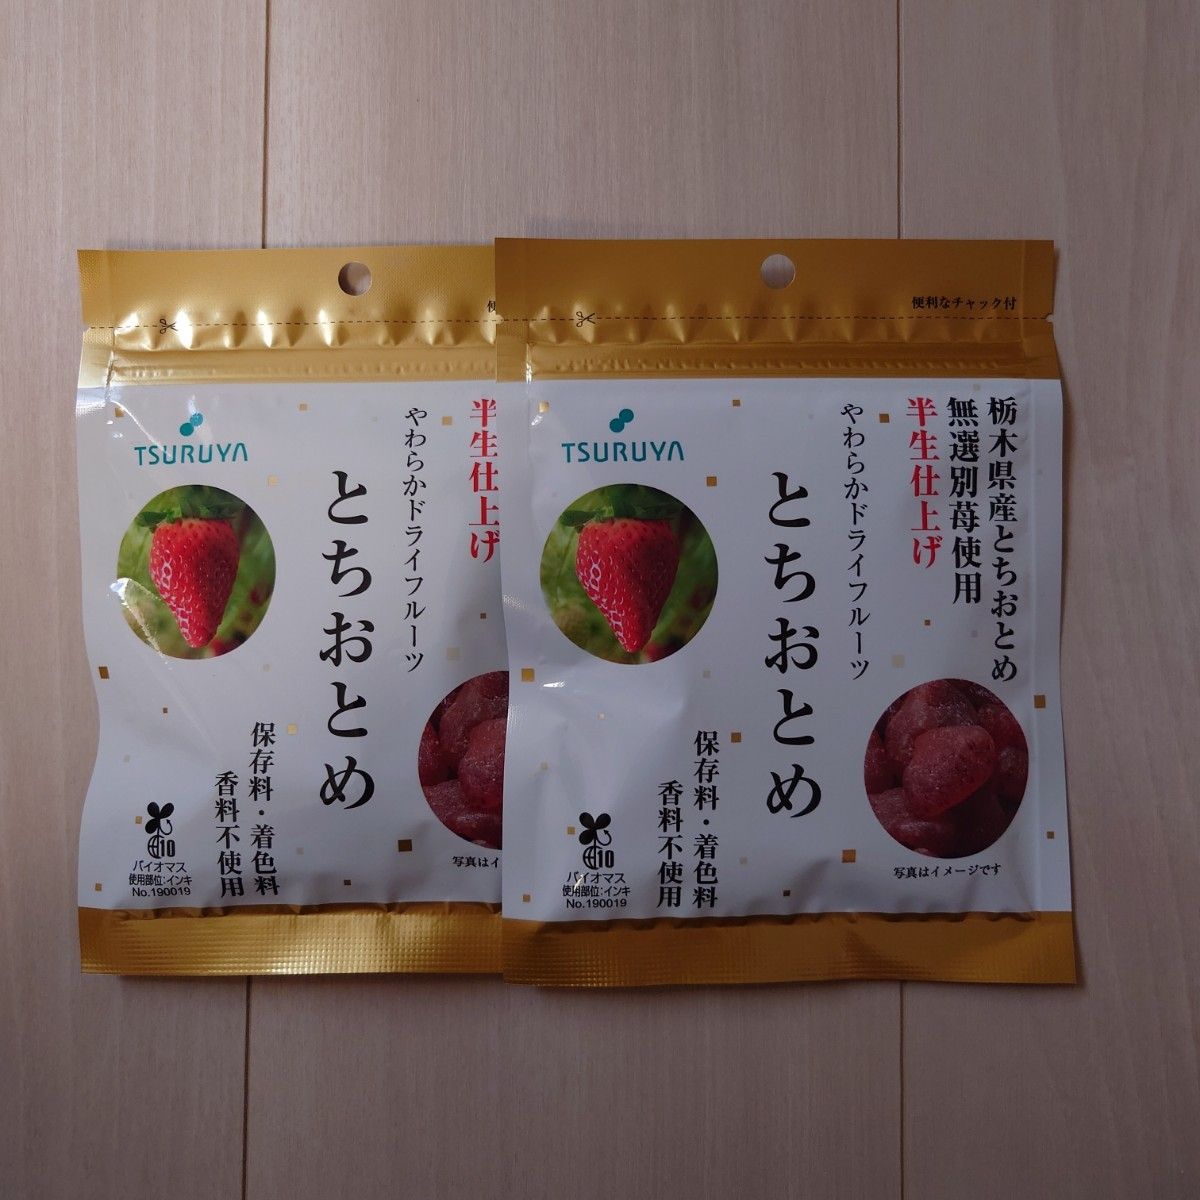 ツルヤ 栃木県産半生仕上げやわらかドライフルーツ とちおとめ2袋